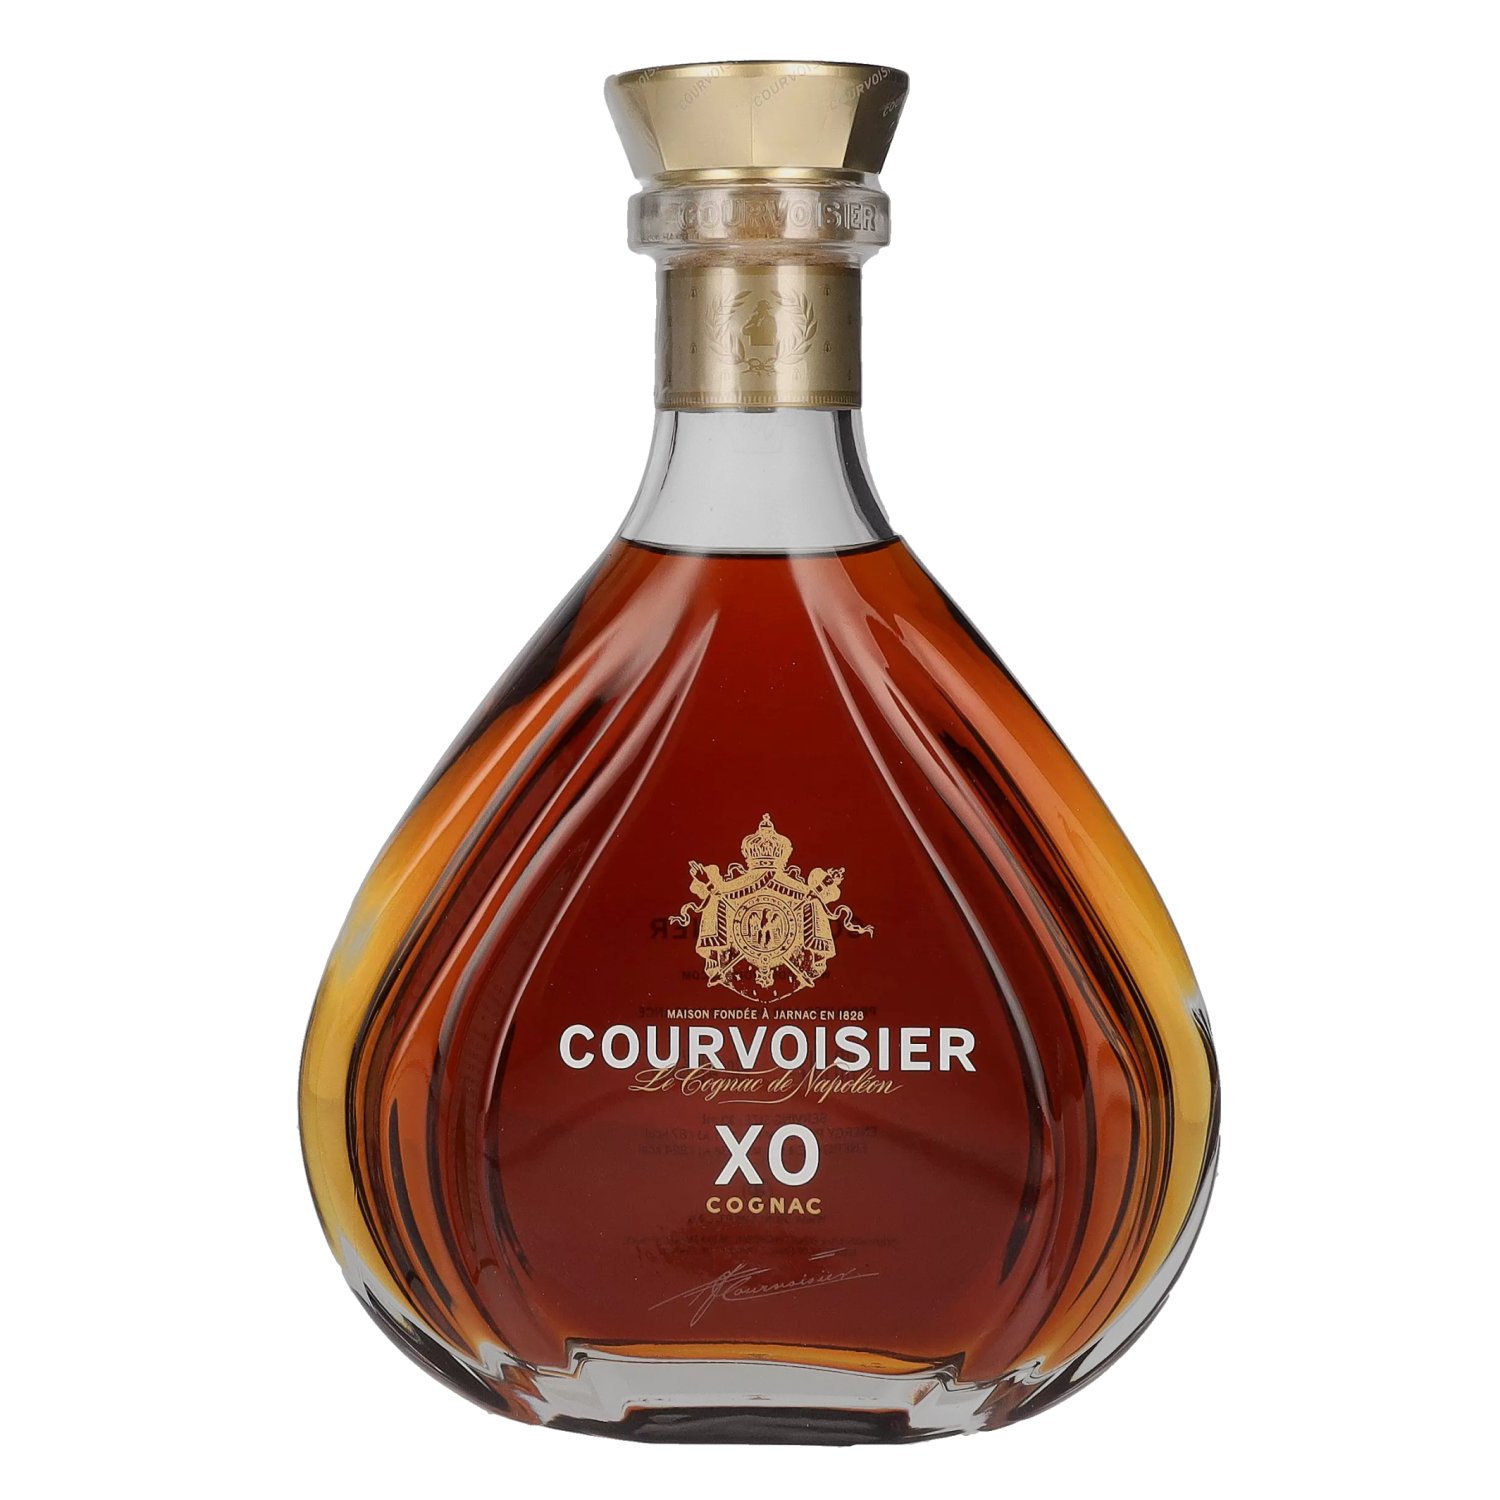 Courvoisier XO Le Cognac de Napoléon 40% Vol. 0,7l